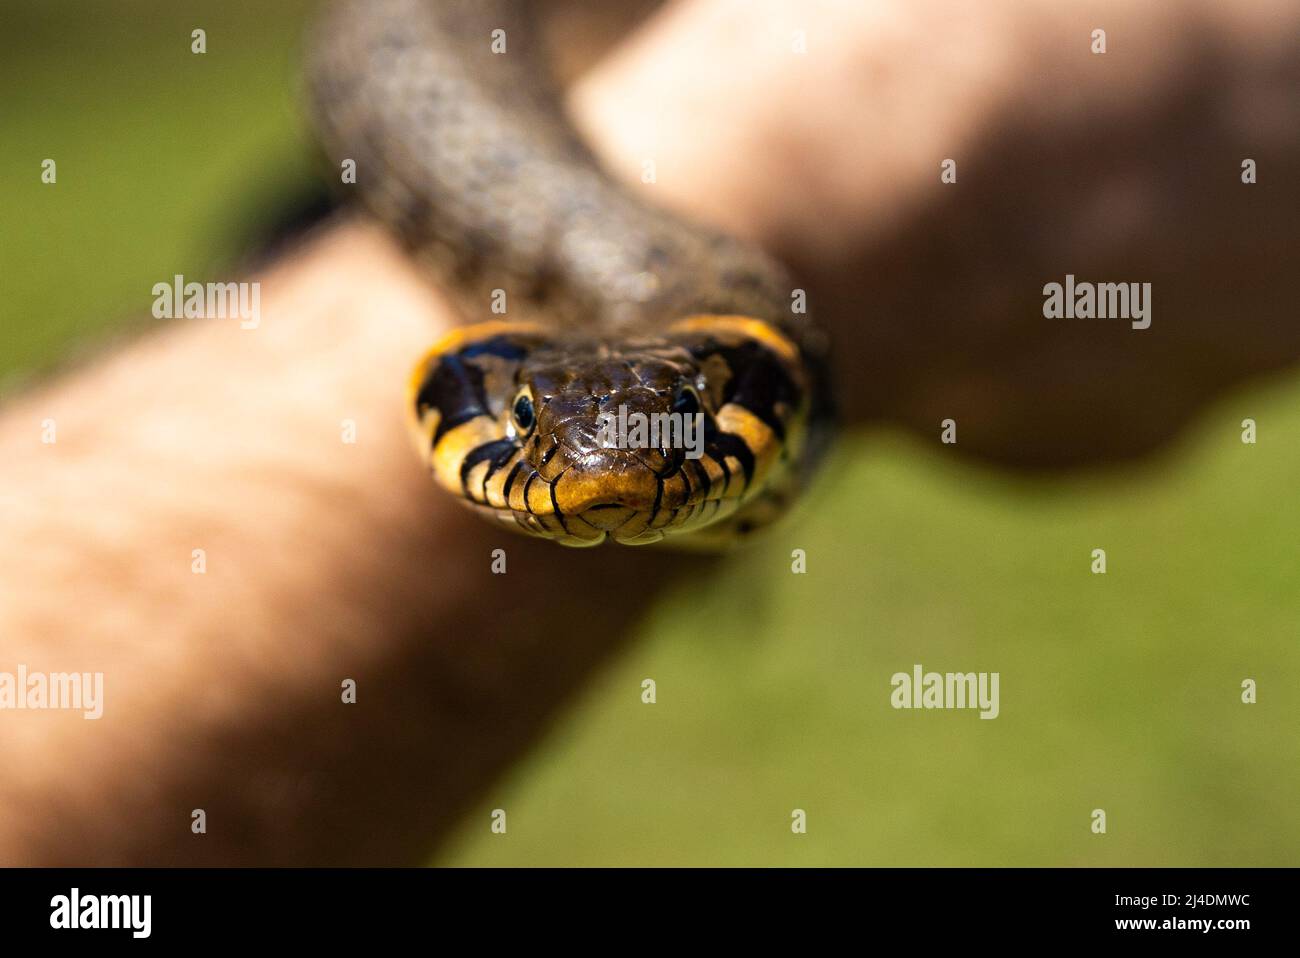 Serpent non venimeux à herbe commune sur un champ d'herbe au soleil. La langue noire des serpents est sortie. Photo macro d'un serpent. Photo de haute qualité Banque D'Images